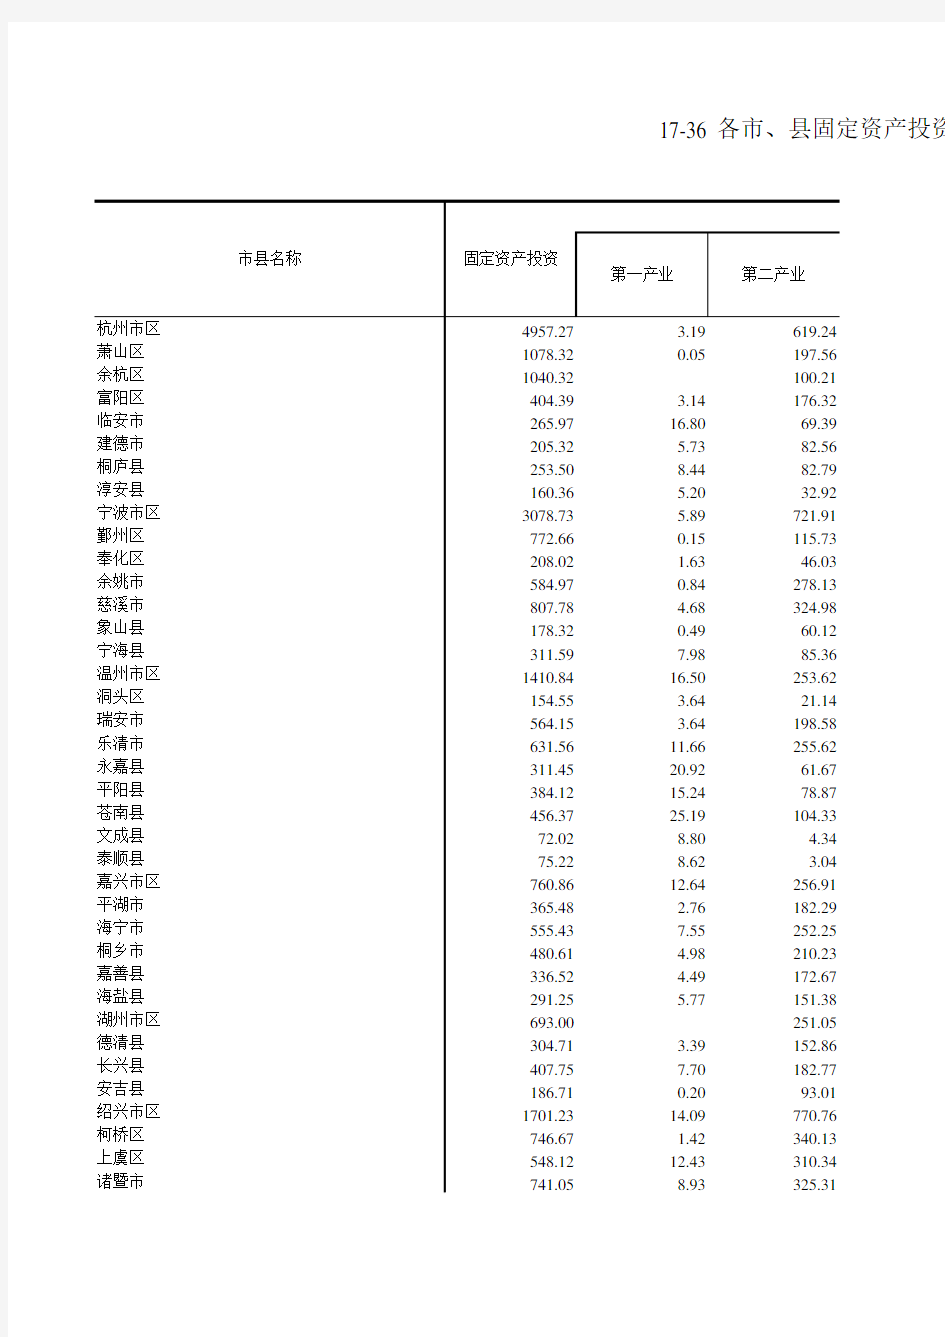 浙江统计年鉴2017社会经济发展指标：各市县固定资产投资(2016年)